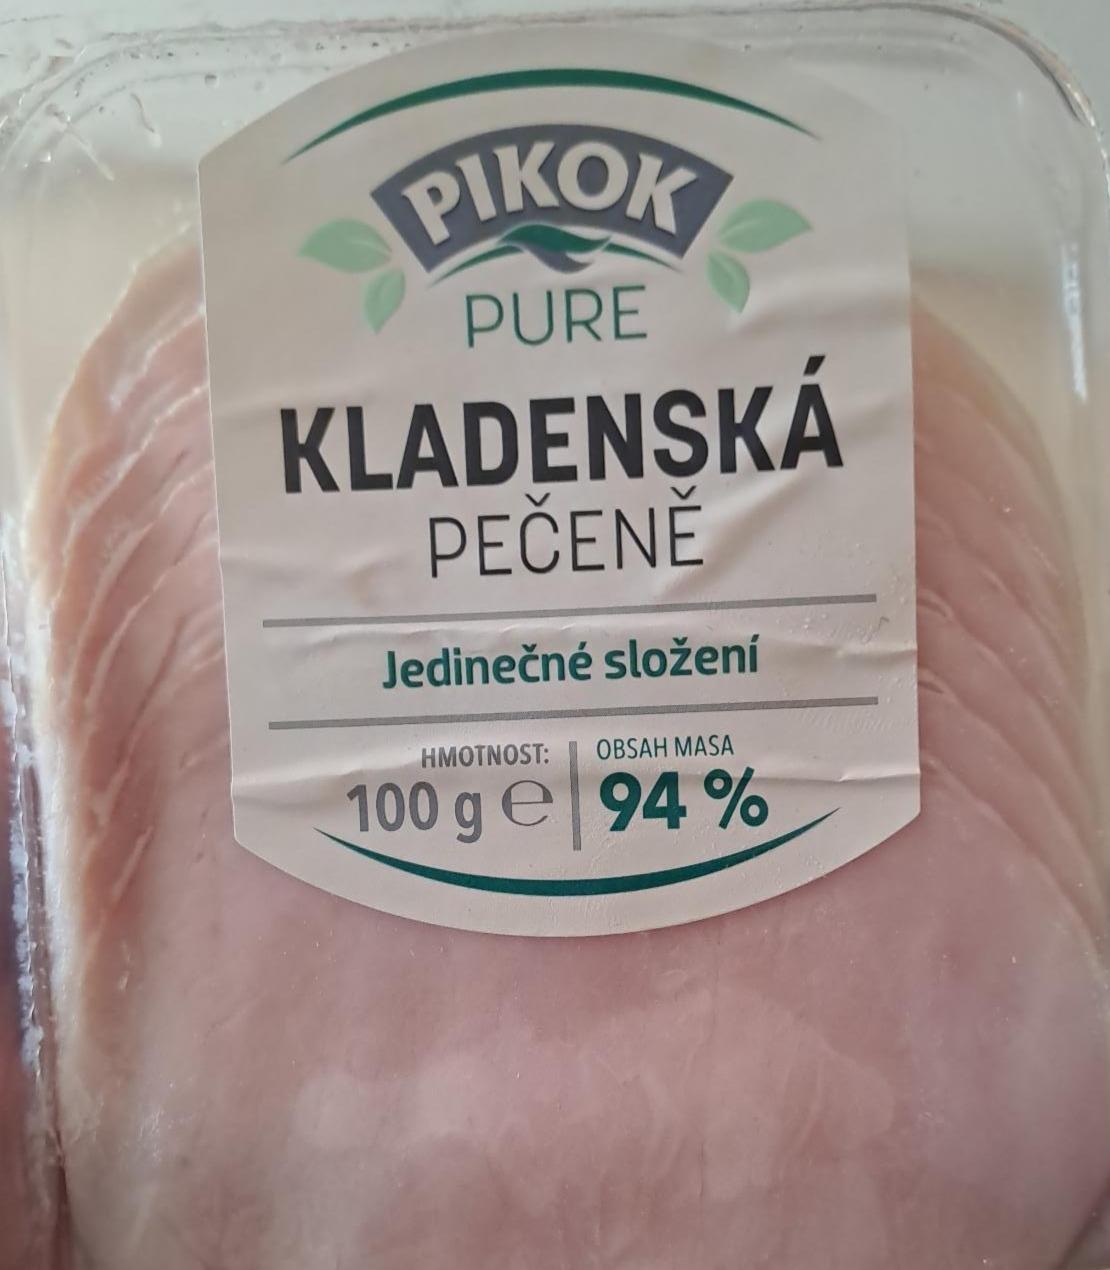 Fotografie - Kladenská pečeně 94% Pikok Pure